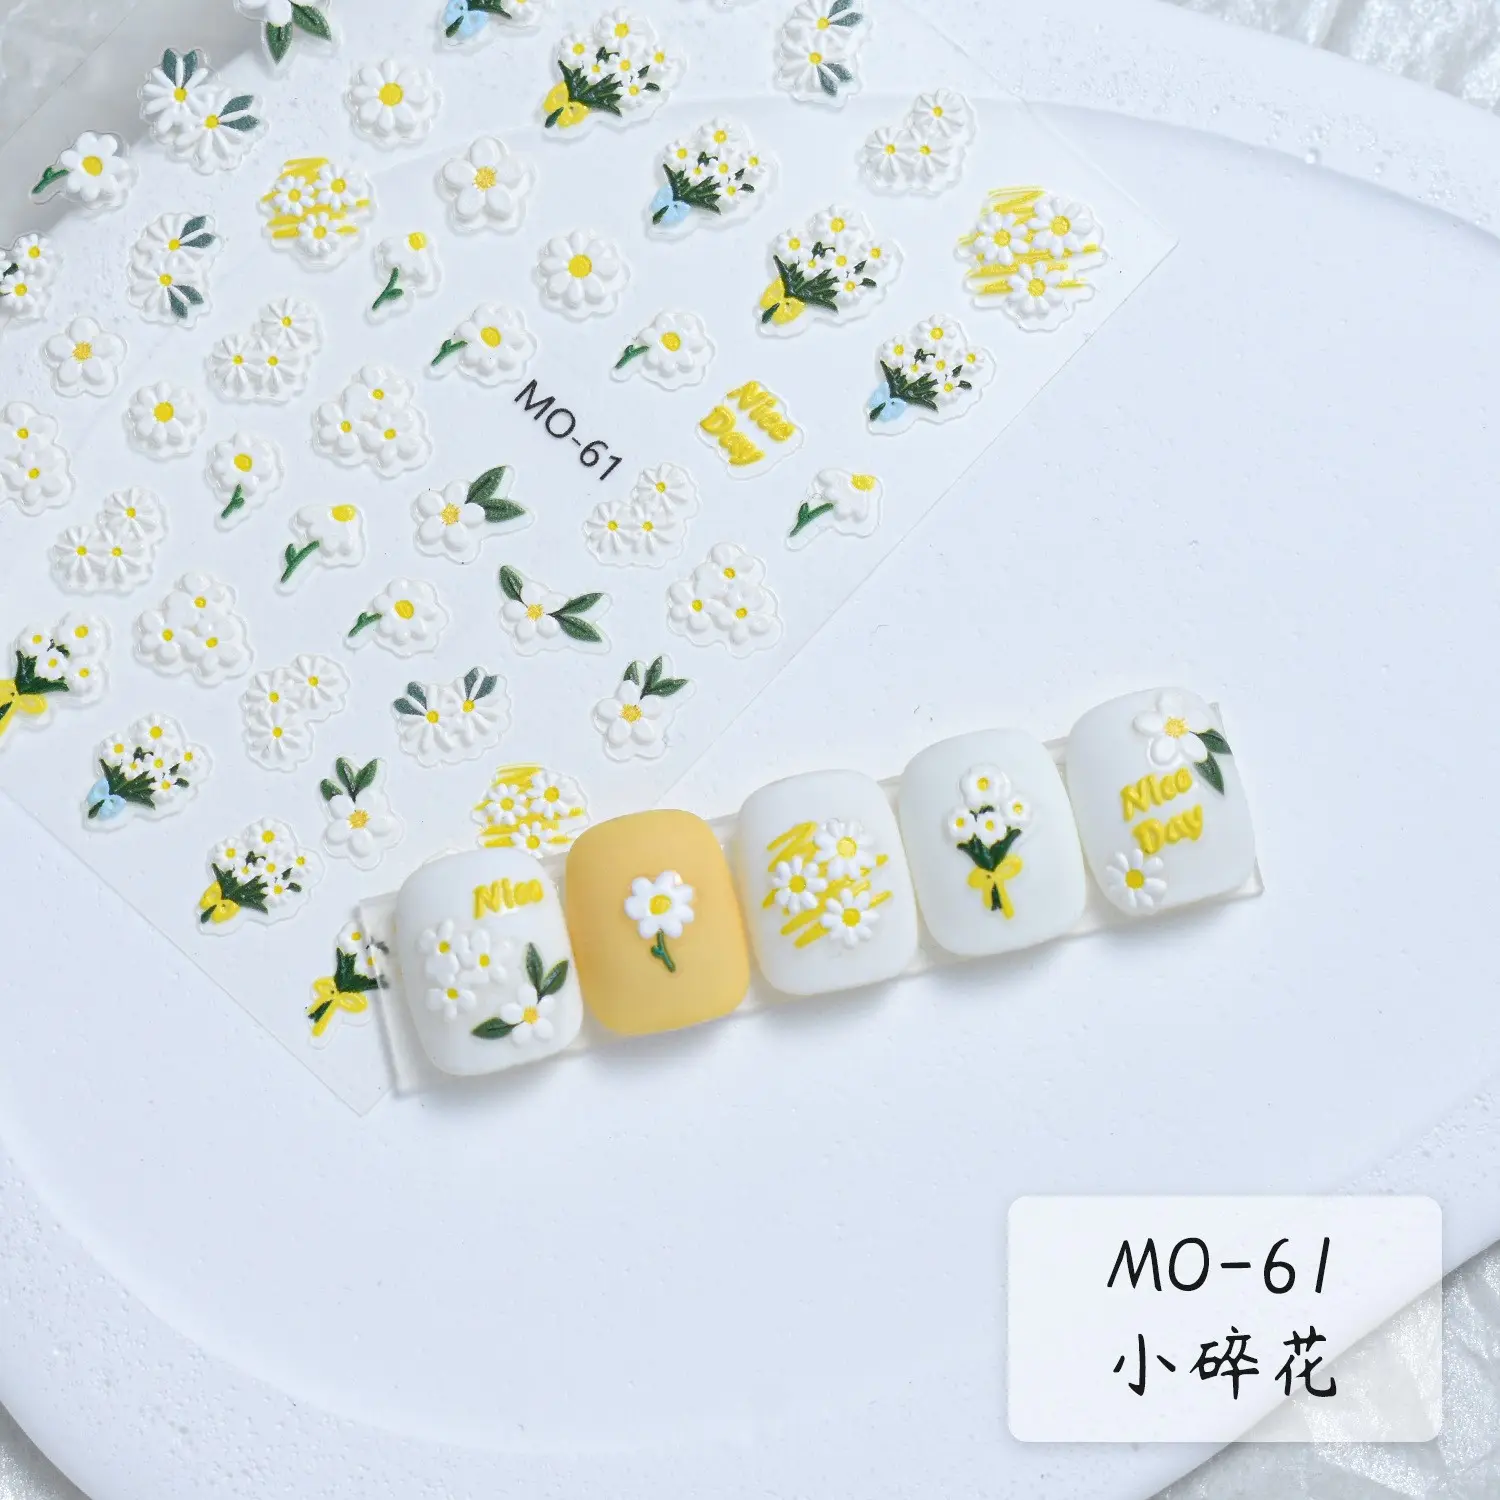 61-63 vente en gros Nail Art fournitures adhésif anti-moisissure petite fleur blanche autocollants pour ongles